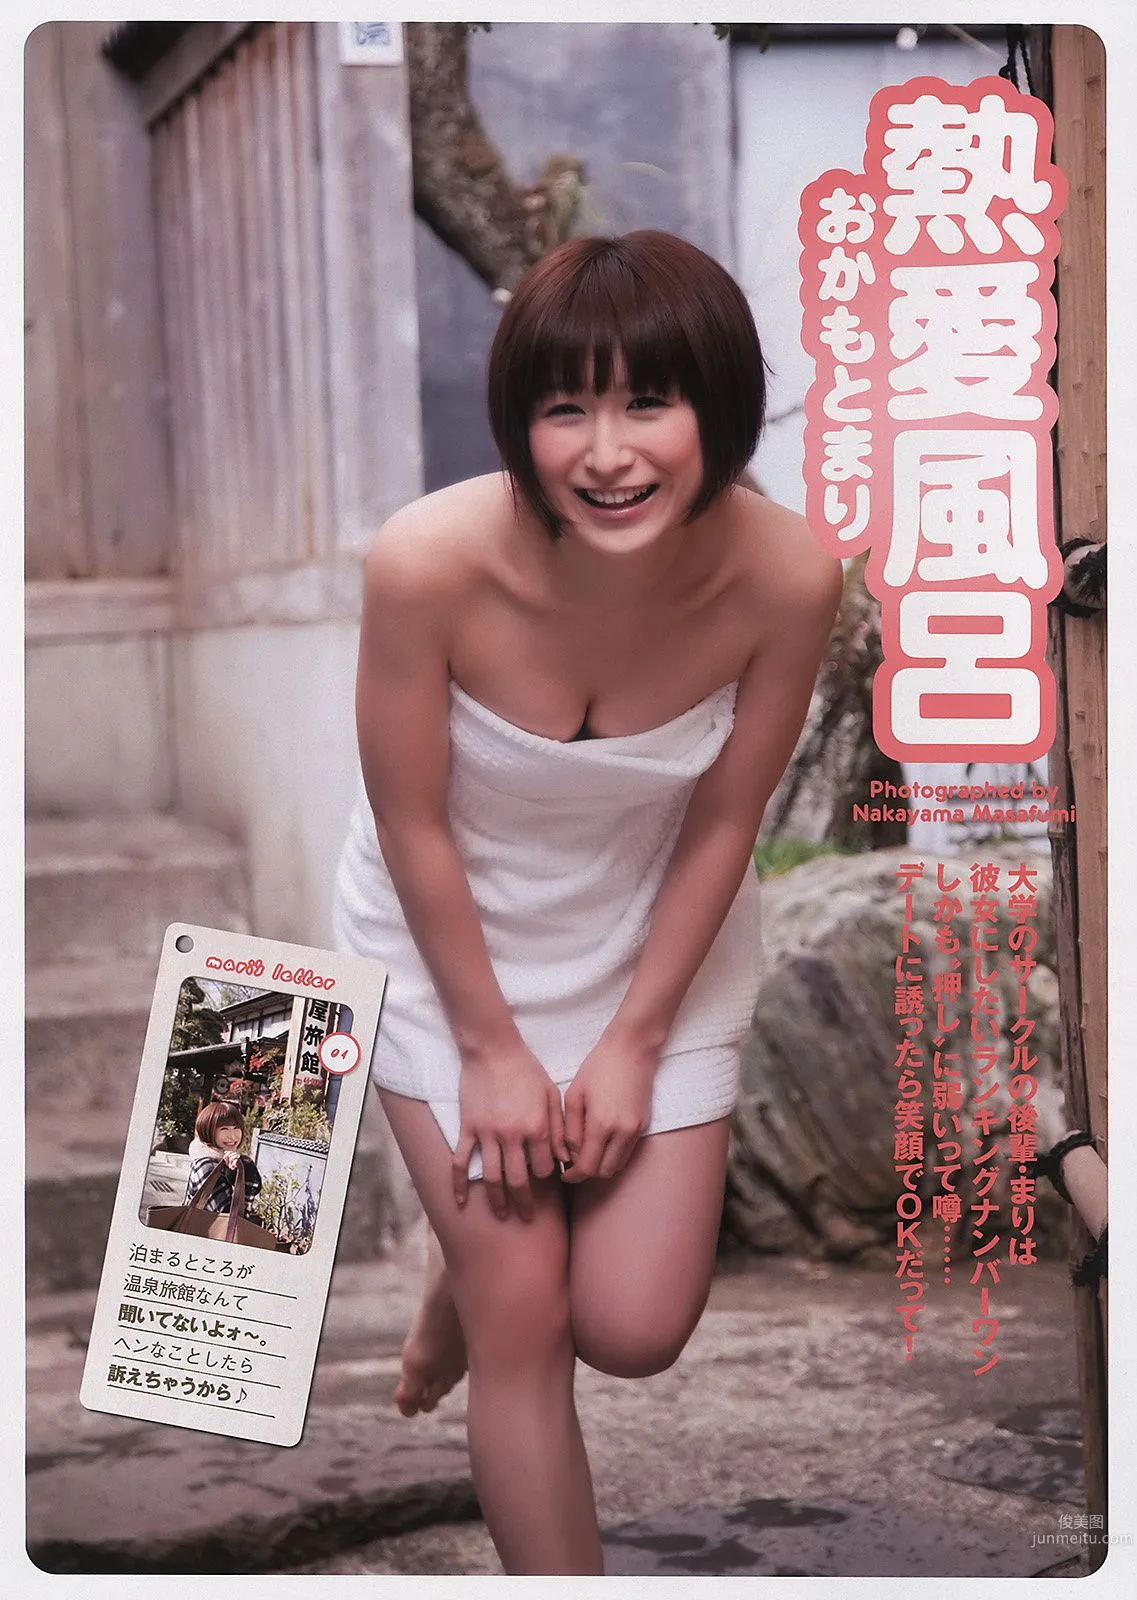 佐々木希 逢沢りな 次原かな NMB48 おかもとまり [Weekly Playboy] 2011年No.11 写真杂志33